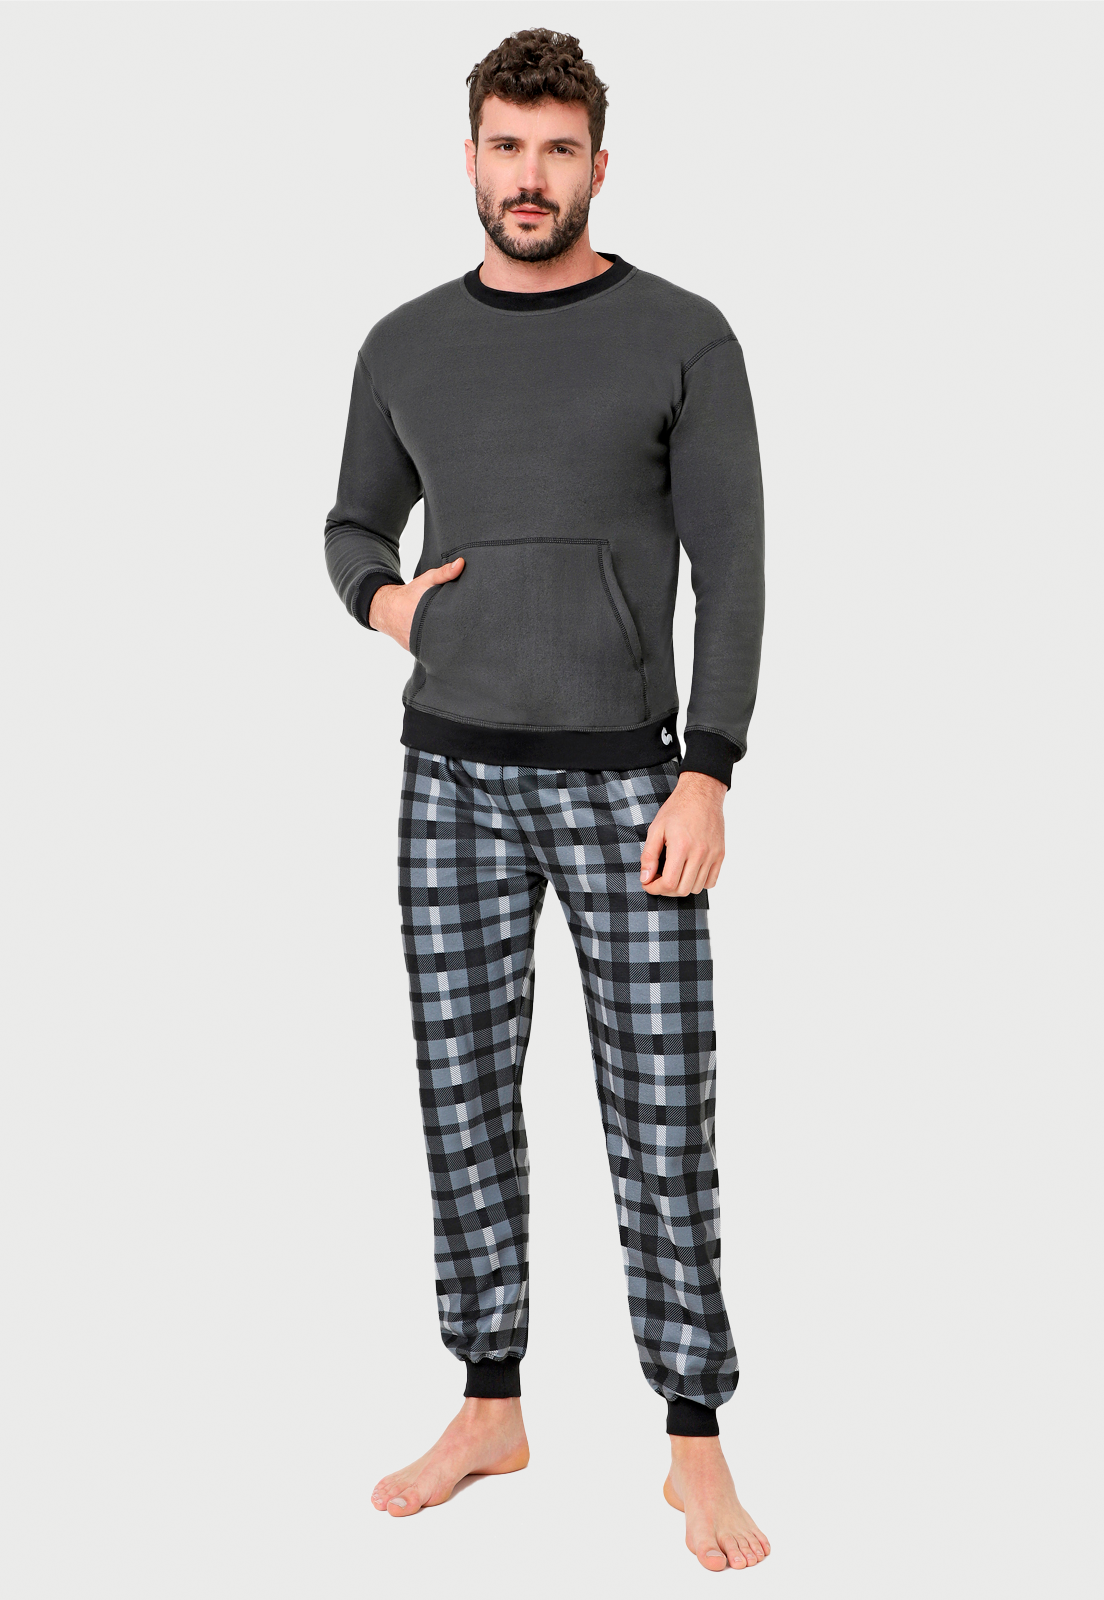 Pijama para Hombre Negra Gris | Leñador | En Fleece y Dulce Abrigo | 20% Off